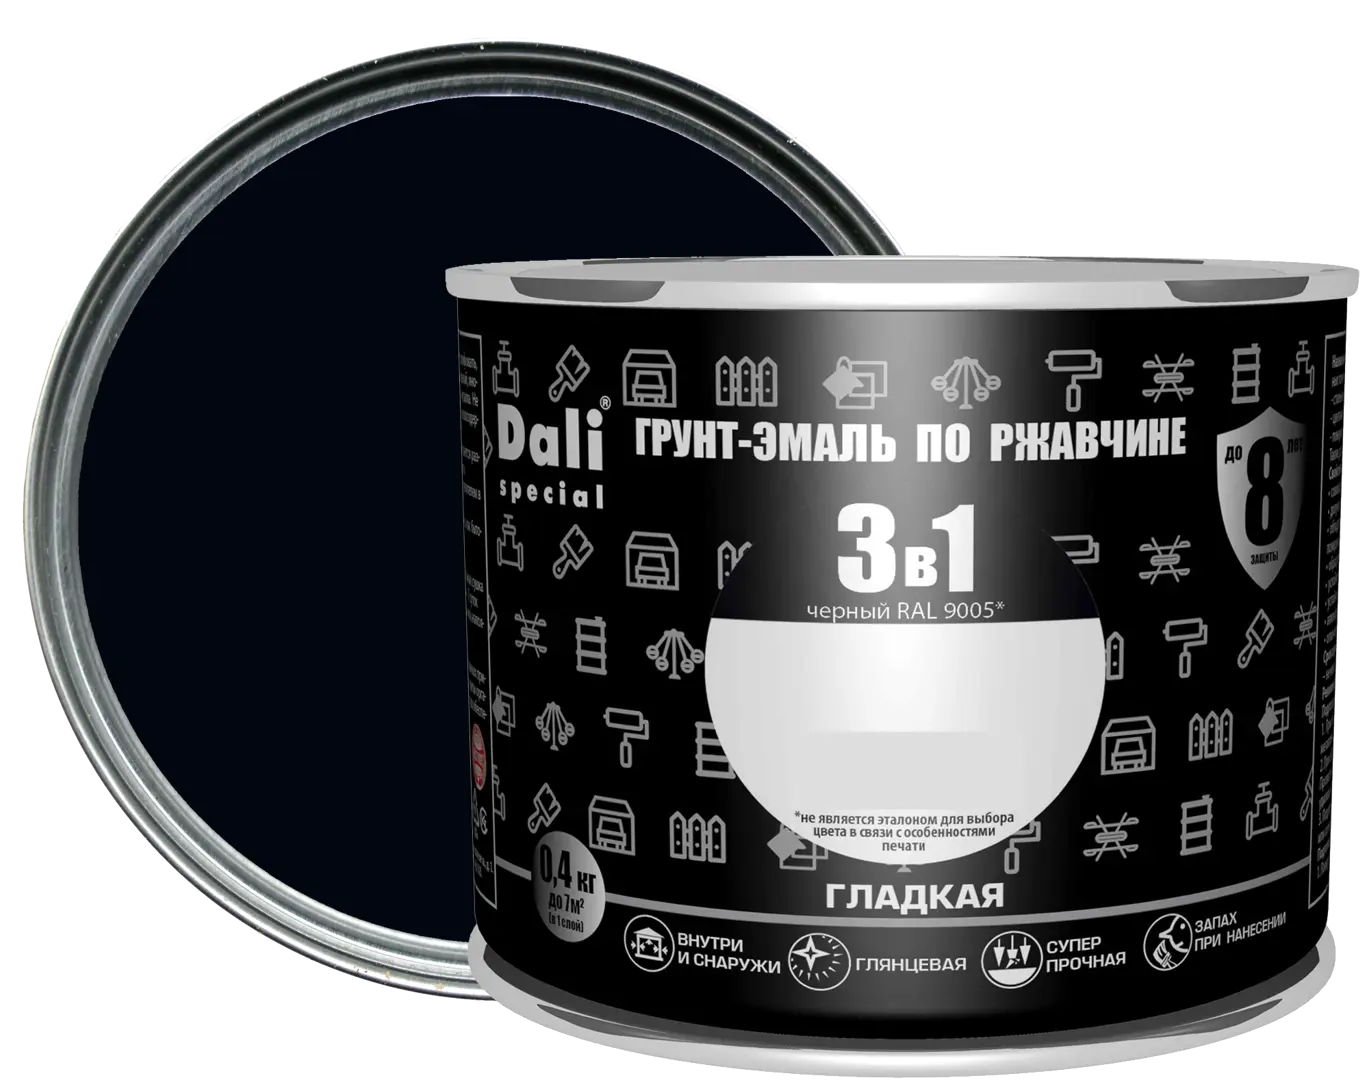 Грунт-эмаль по ржавчине 3 в 1 Dali Special гладкая цвет чёрный 0.4 кг RAL 9005 кисть для макияжа двусторонняя 14 см чёрный серебристый